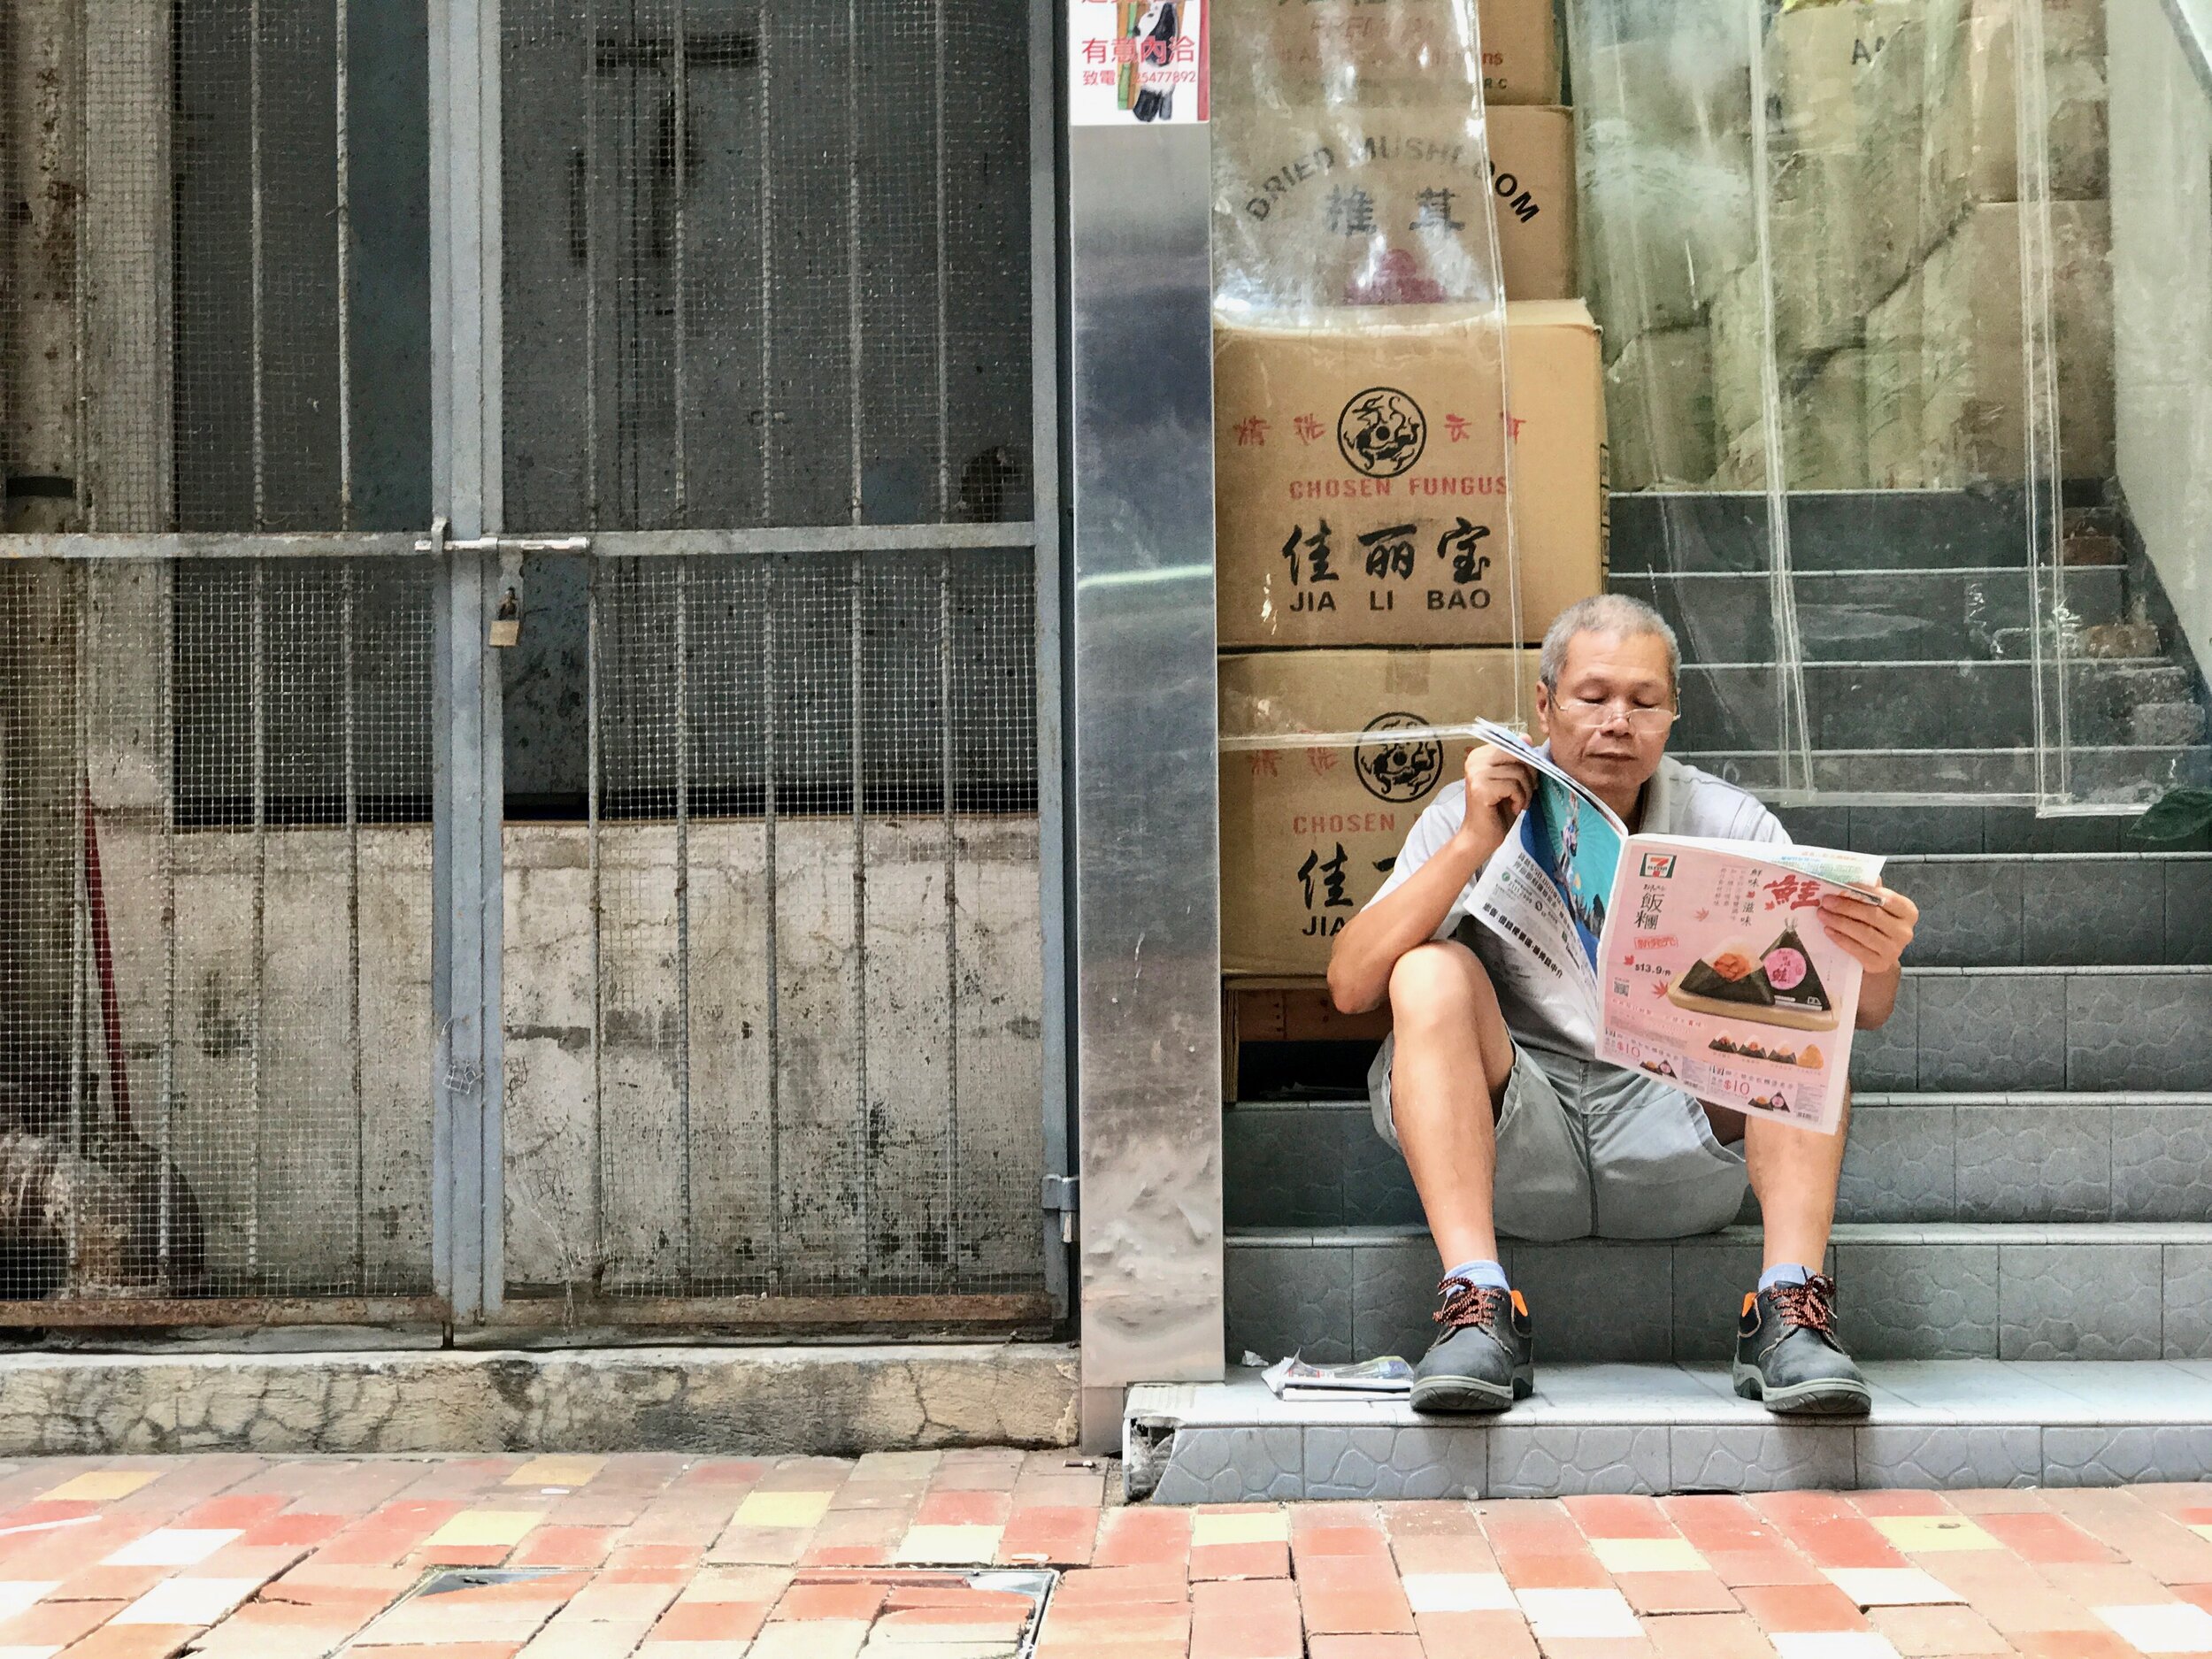 Hong Kong — Anselm Skogstad